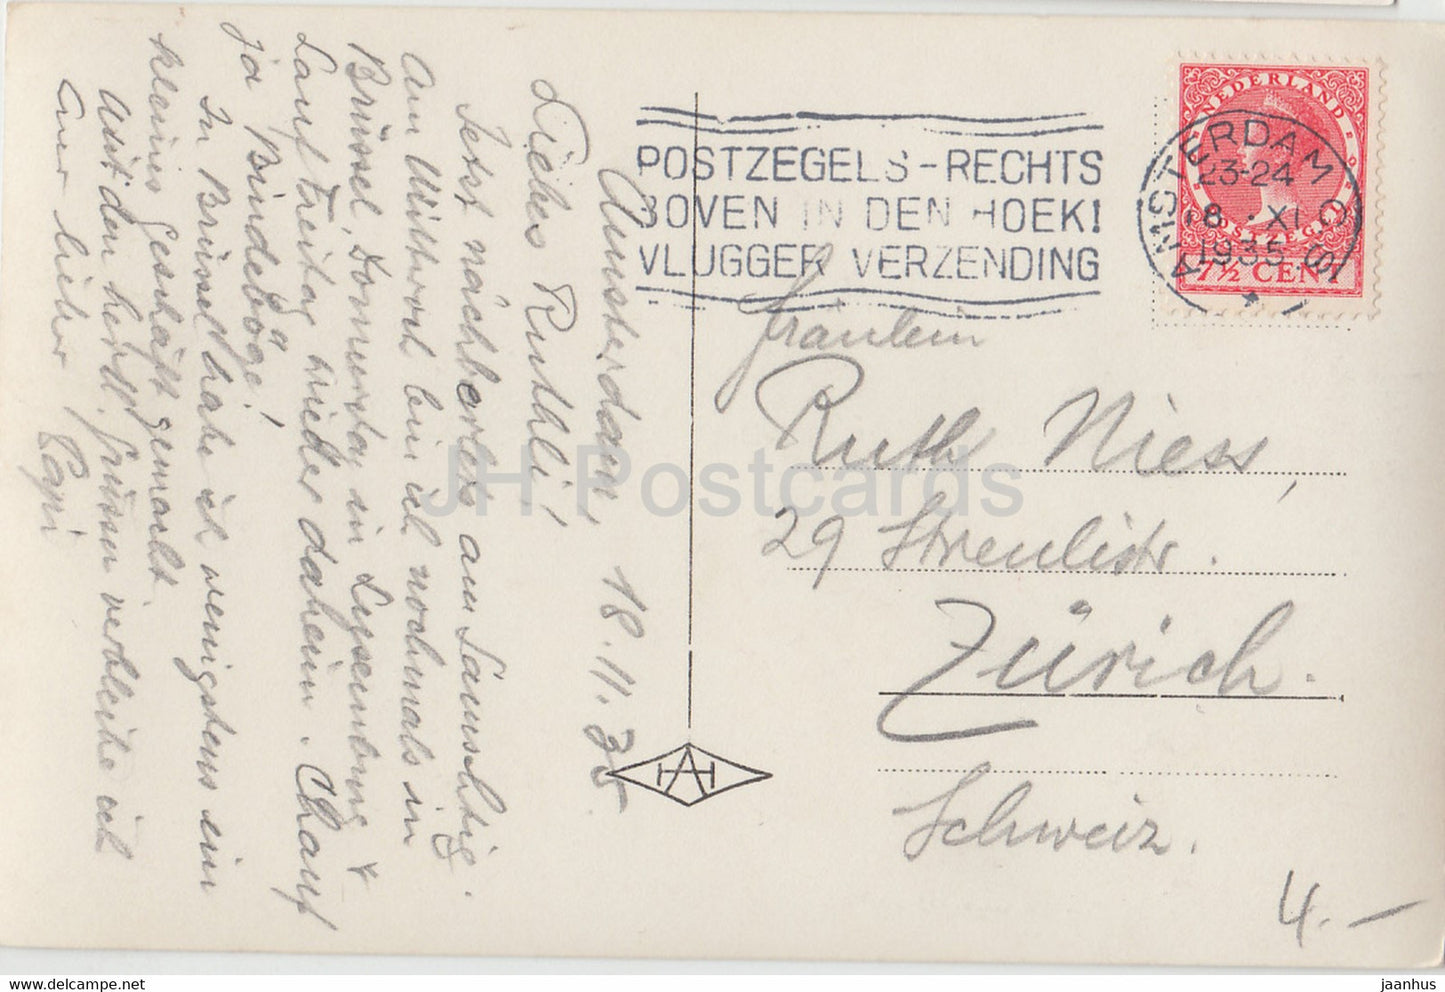 Amsterdam - Gezicht op het - bateau à vapeur - navire - carte postale ancienne - 1935 - Pays-Bas - utilisé